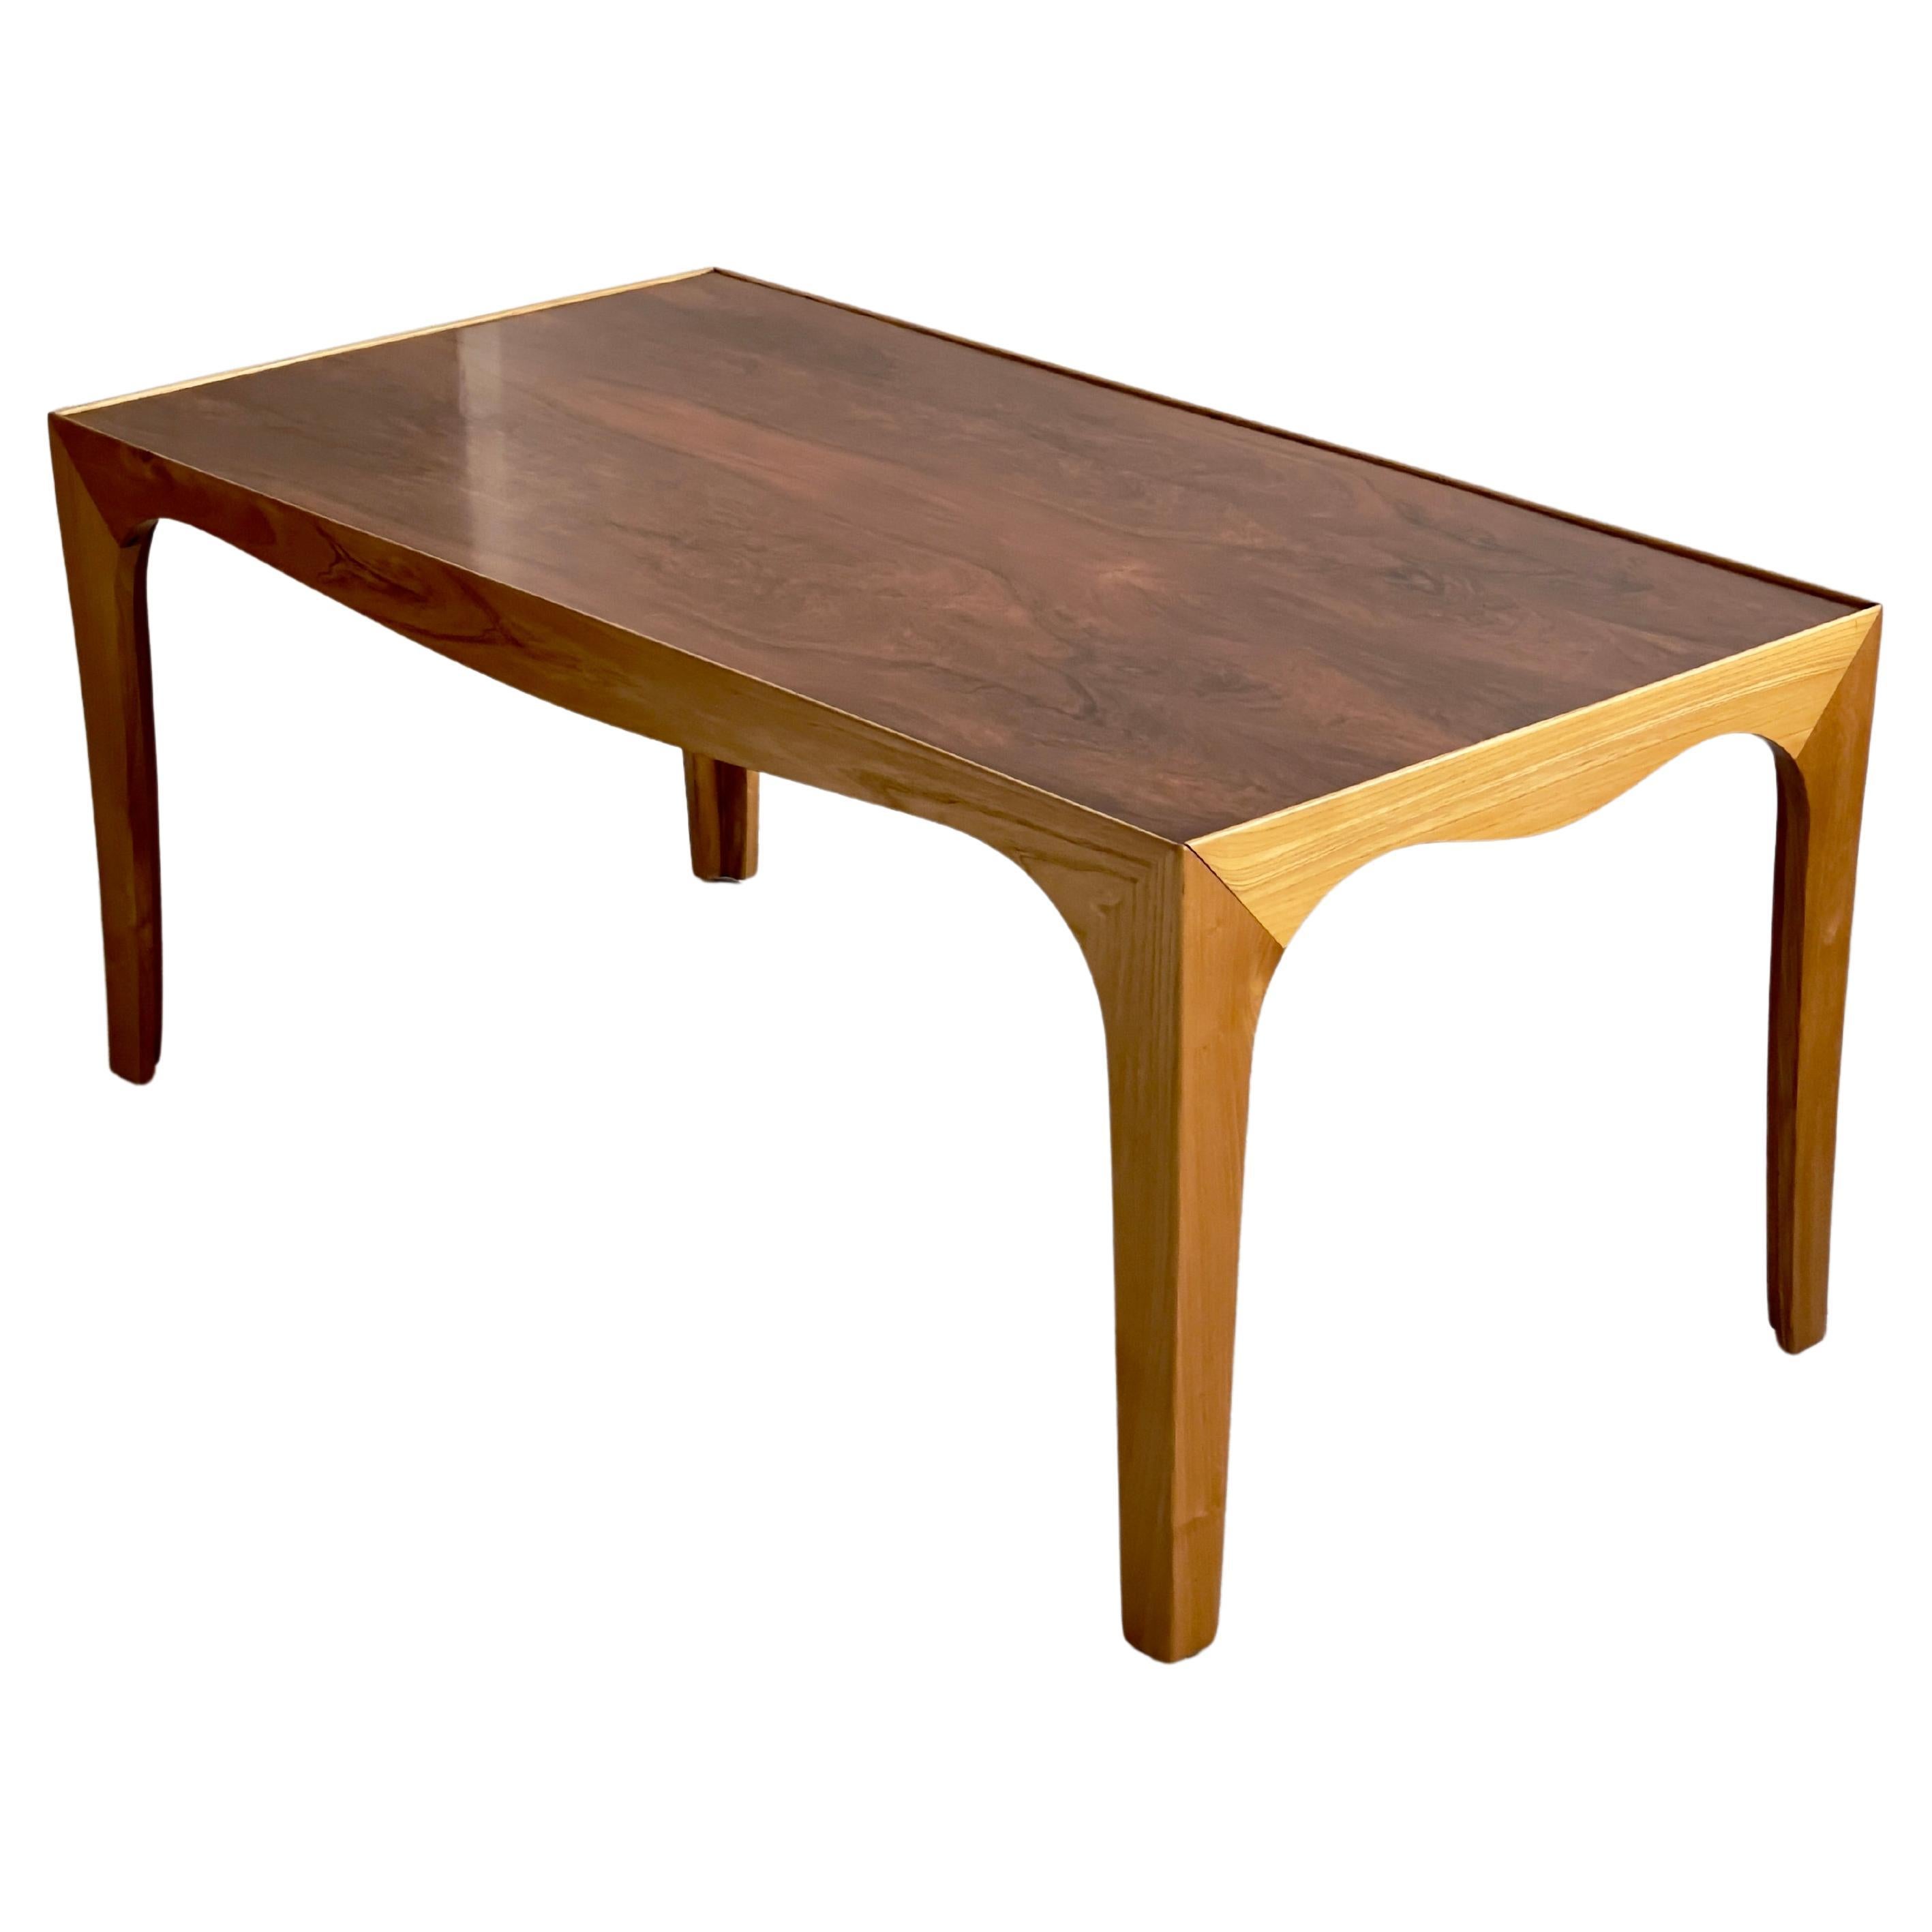 Cette élégante table basse des années 1940 fabriquée par un ébéniste danois moderne représente une fusion remarquable de l'artisanat, du design et des matériaux caractéristiques du mobilier danois du milieu du XXe siècle.

La finition de la surface